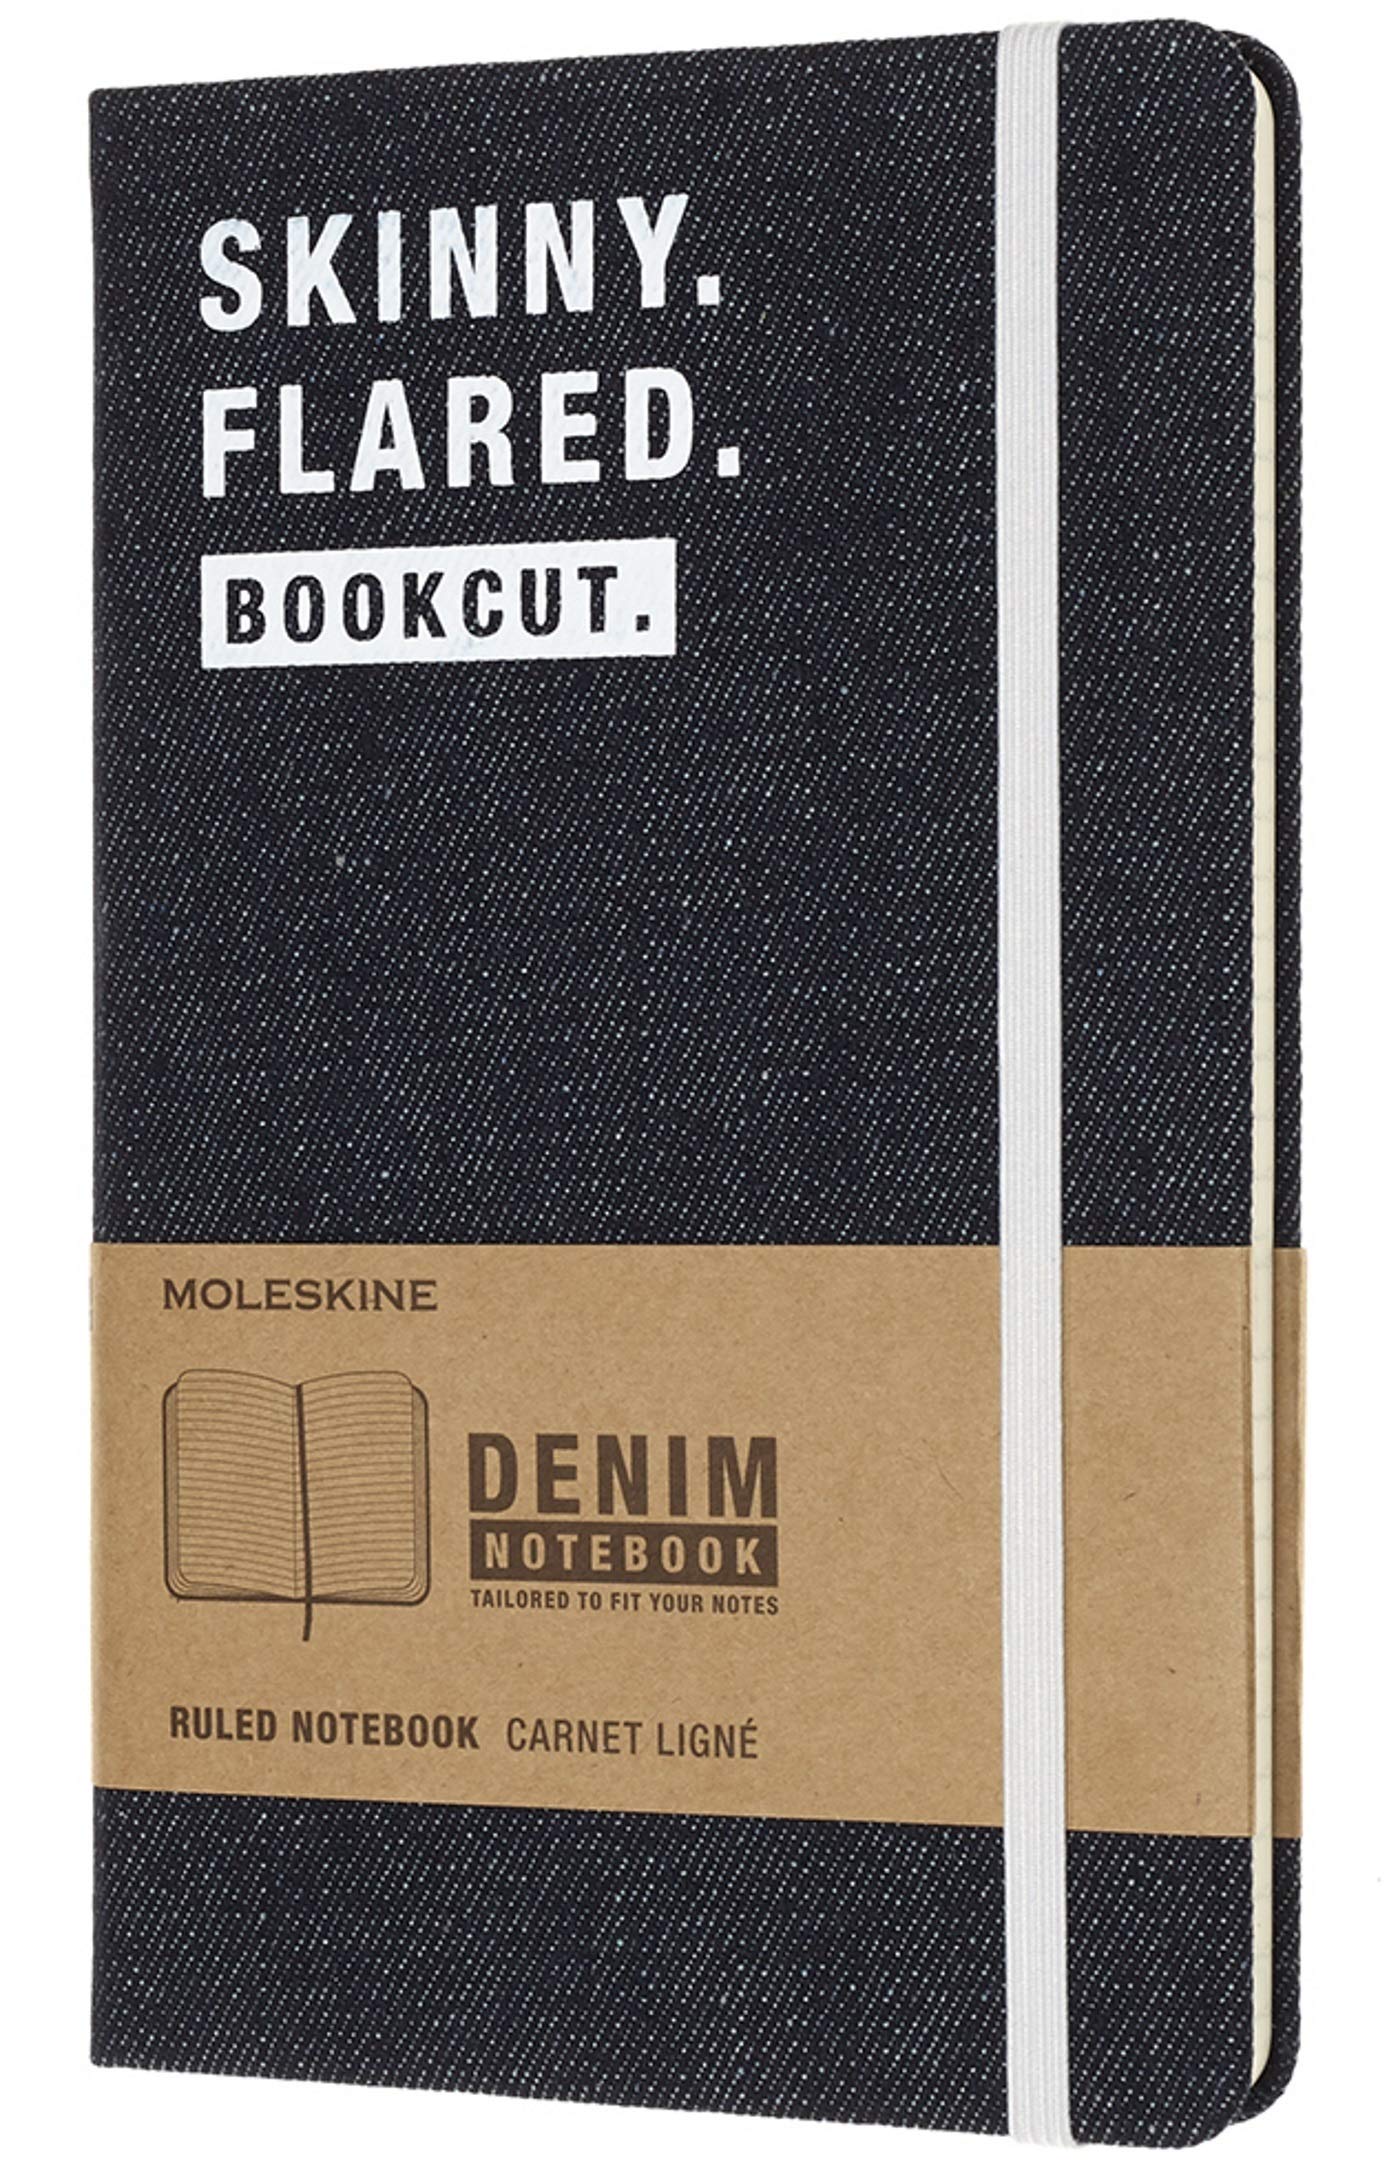 Jurnal Moleskine - Denim Limited Collection, Skinny. Flared. Bookcut, Large | Moleskine